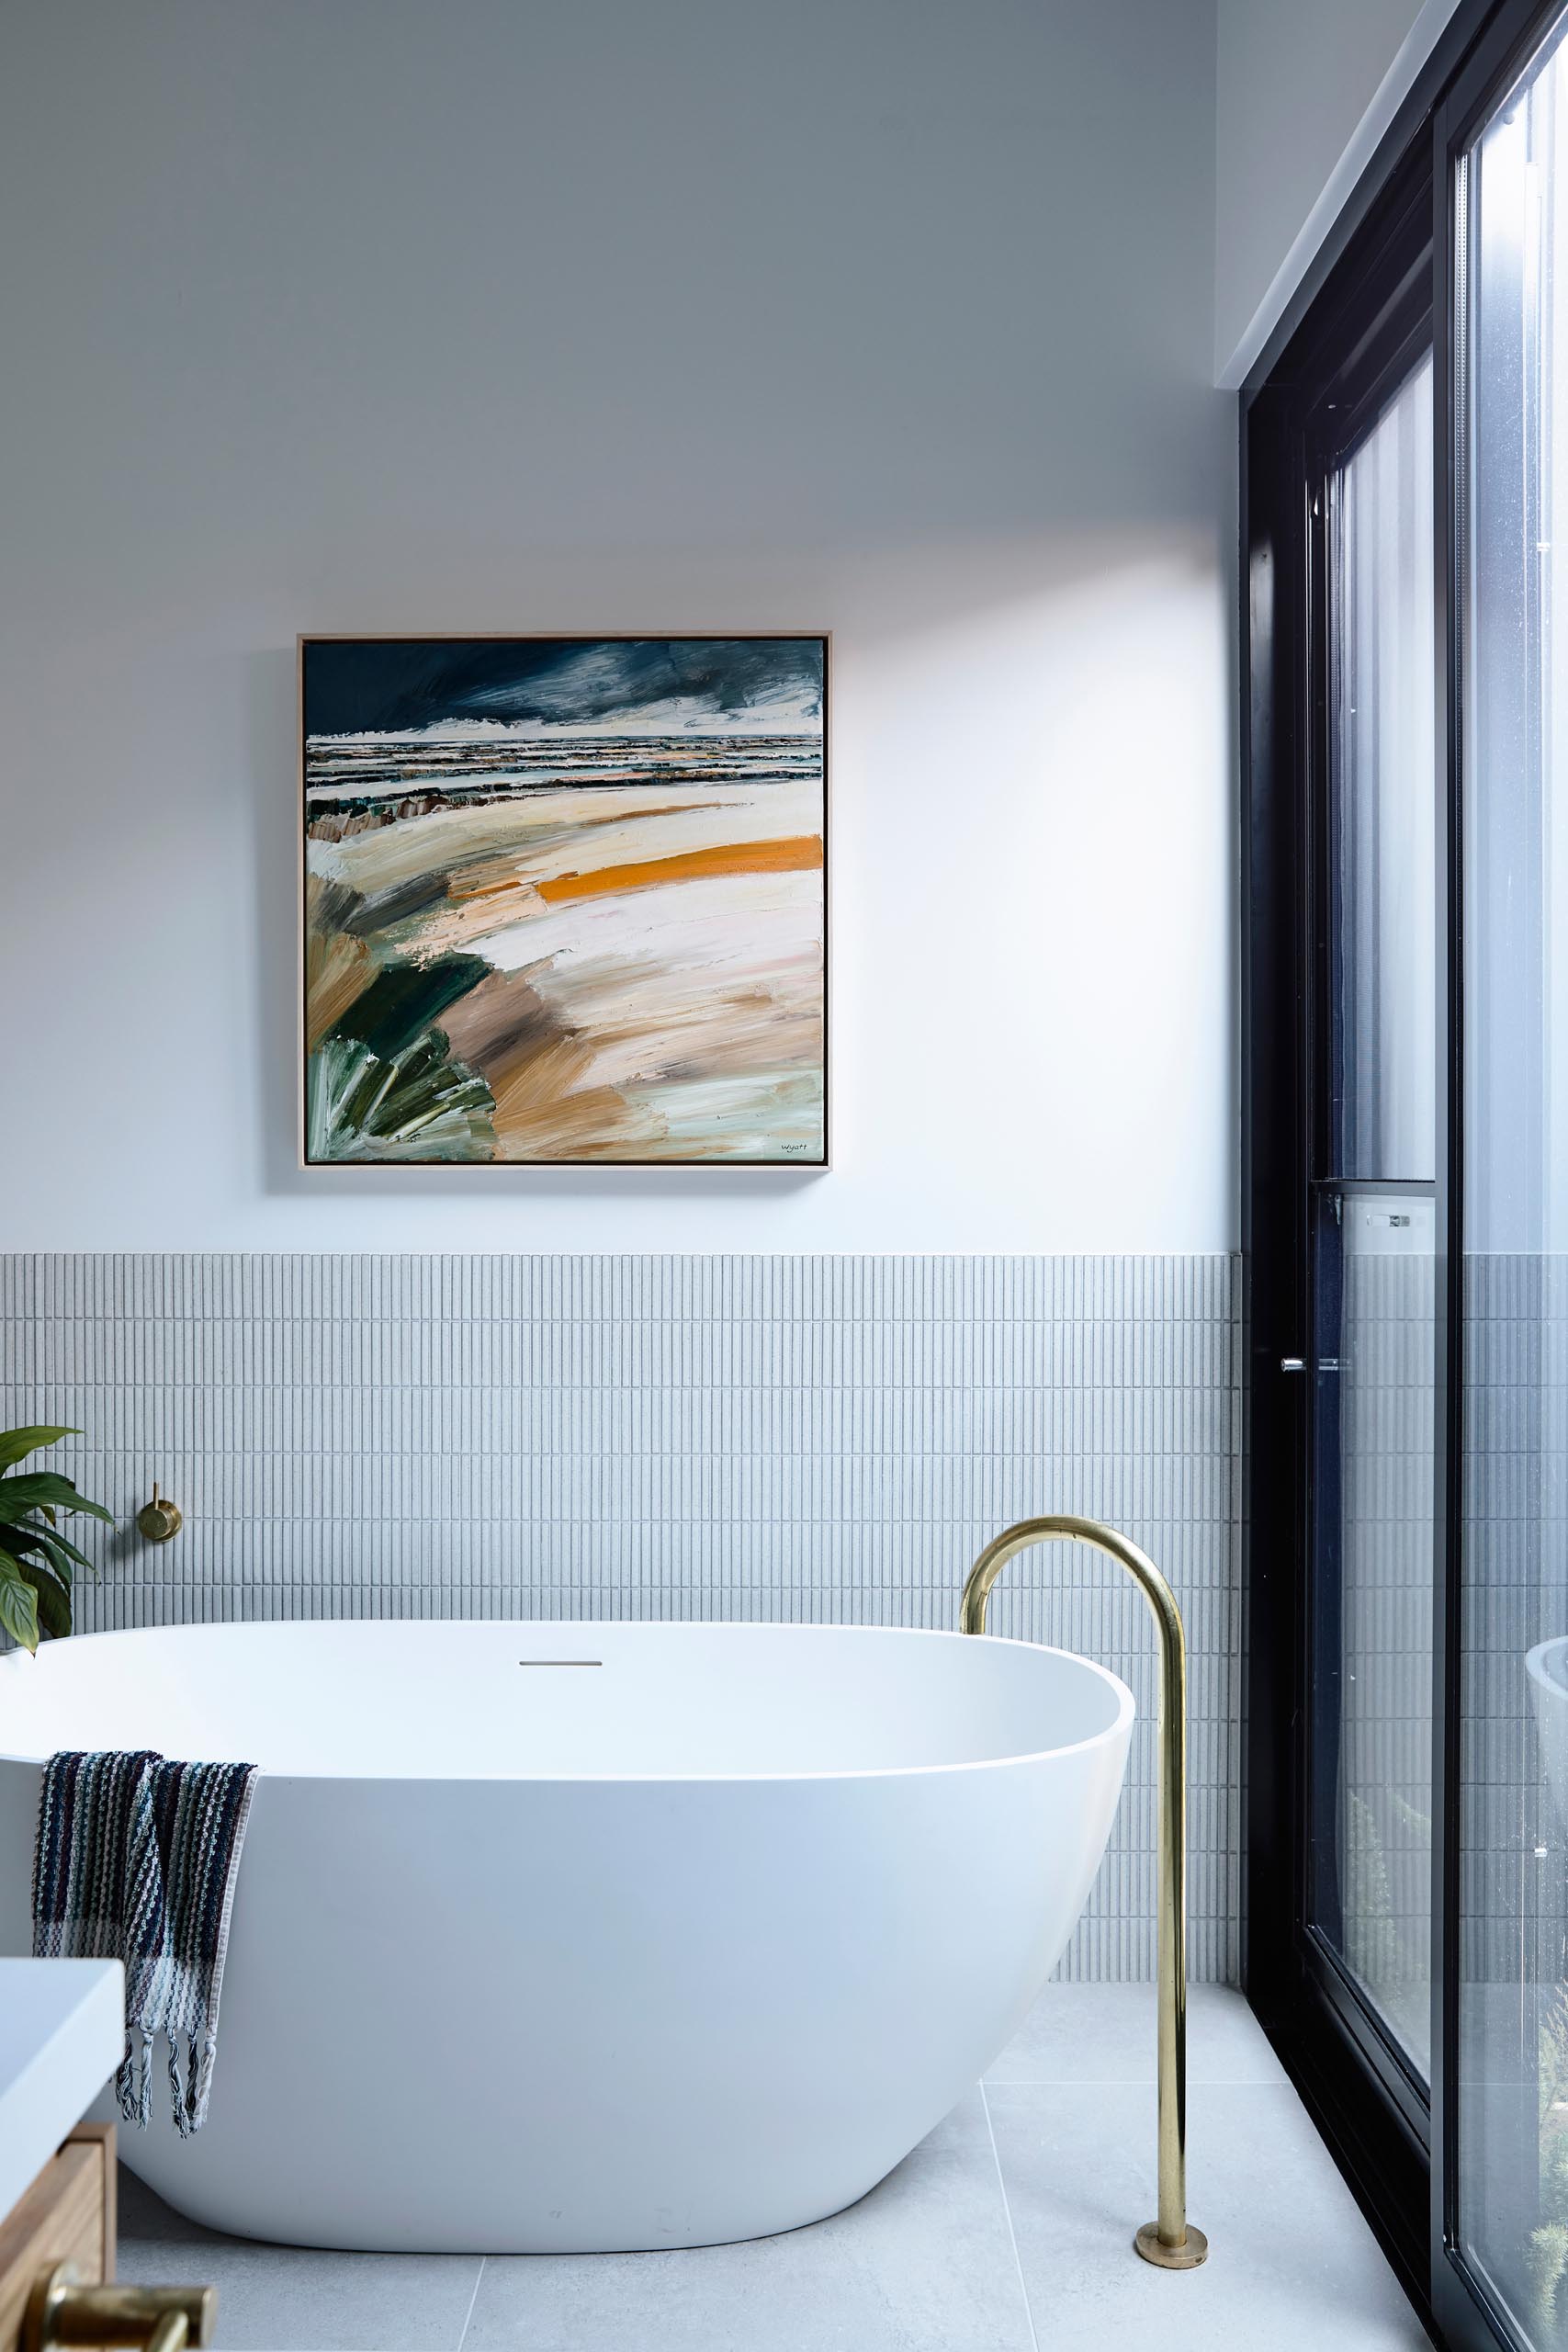 Современная ванная комната с отдельно стоящей белой ванной с вертикальным расположением фона из небольшой прямоугольной плитки.